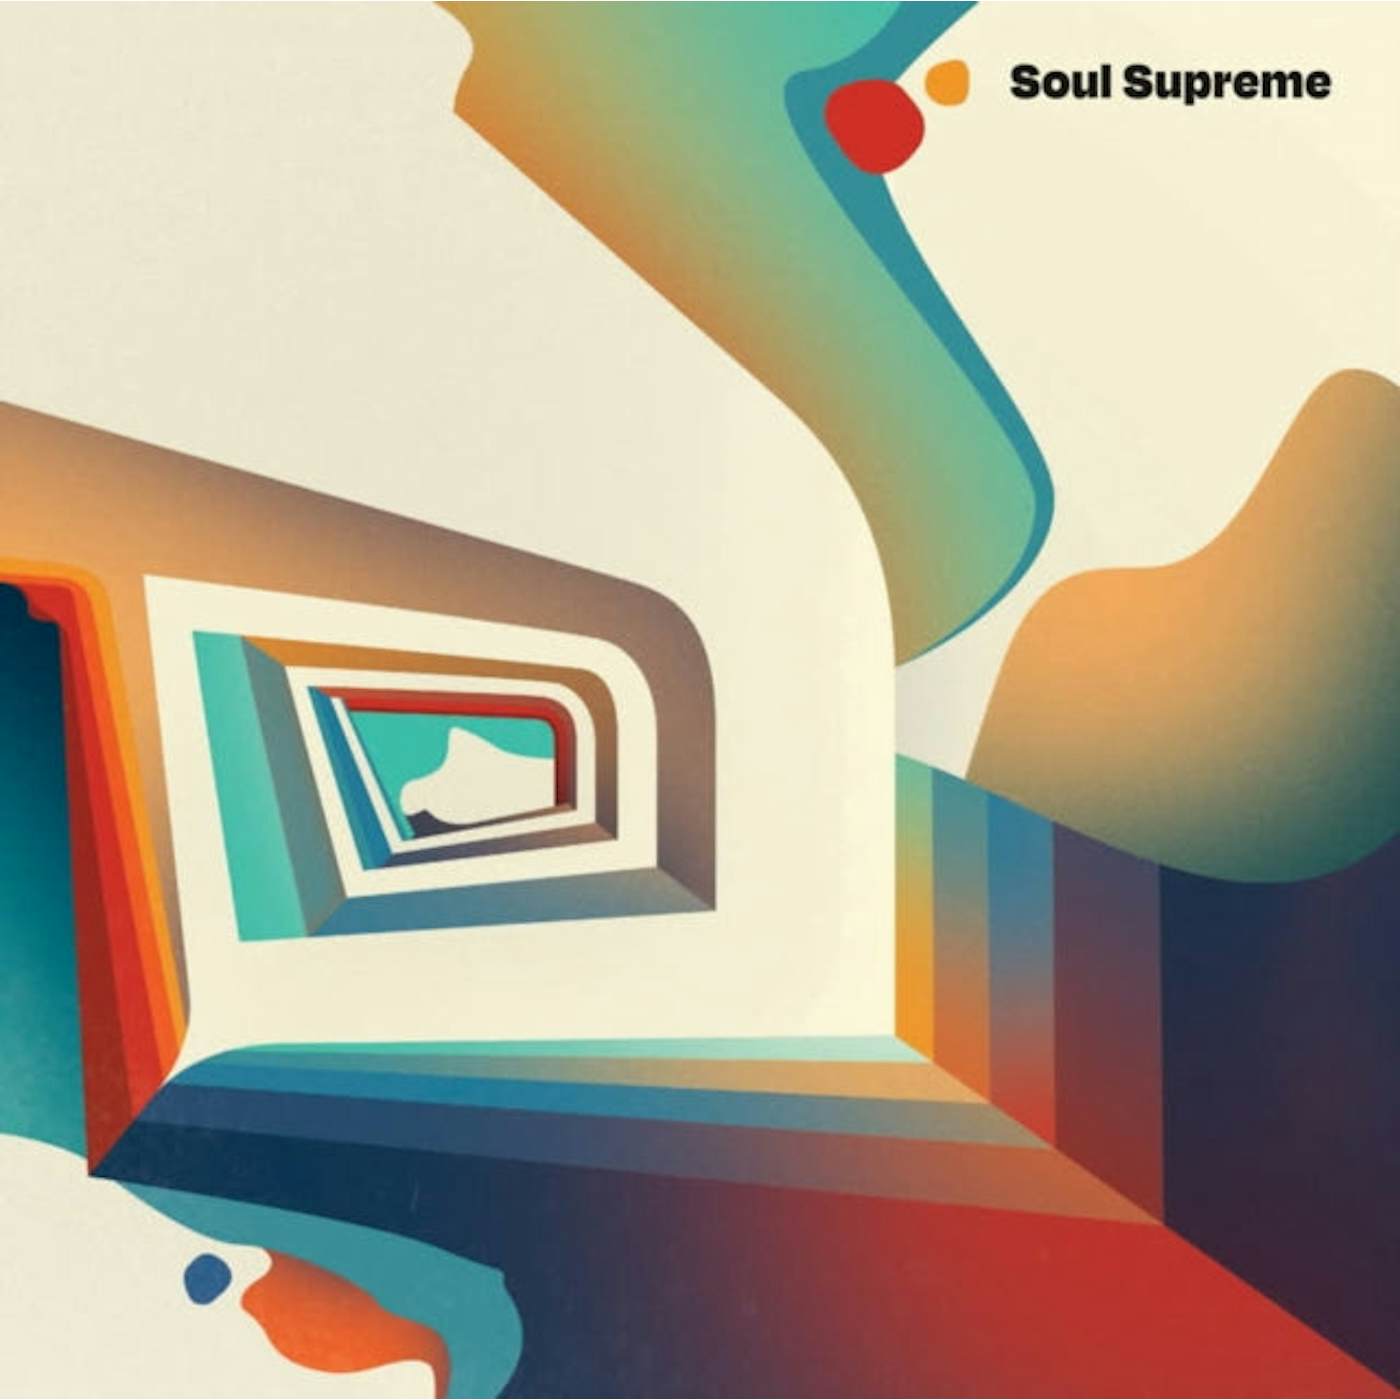 Soul Supreme LP Vinyl Record - Soul Supreme (20. 22 Repress Version)